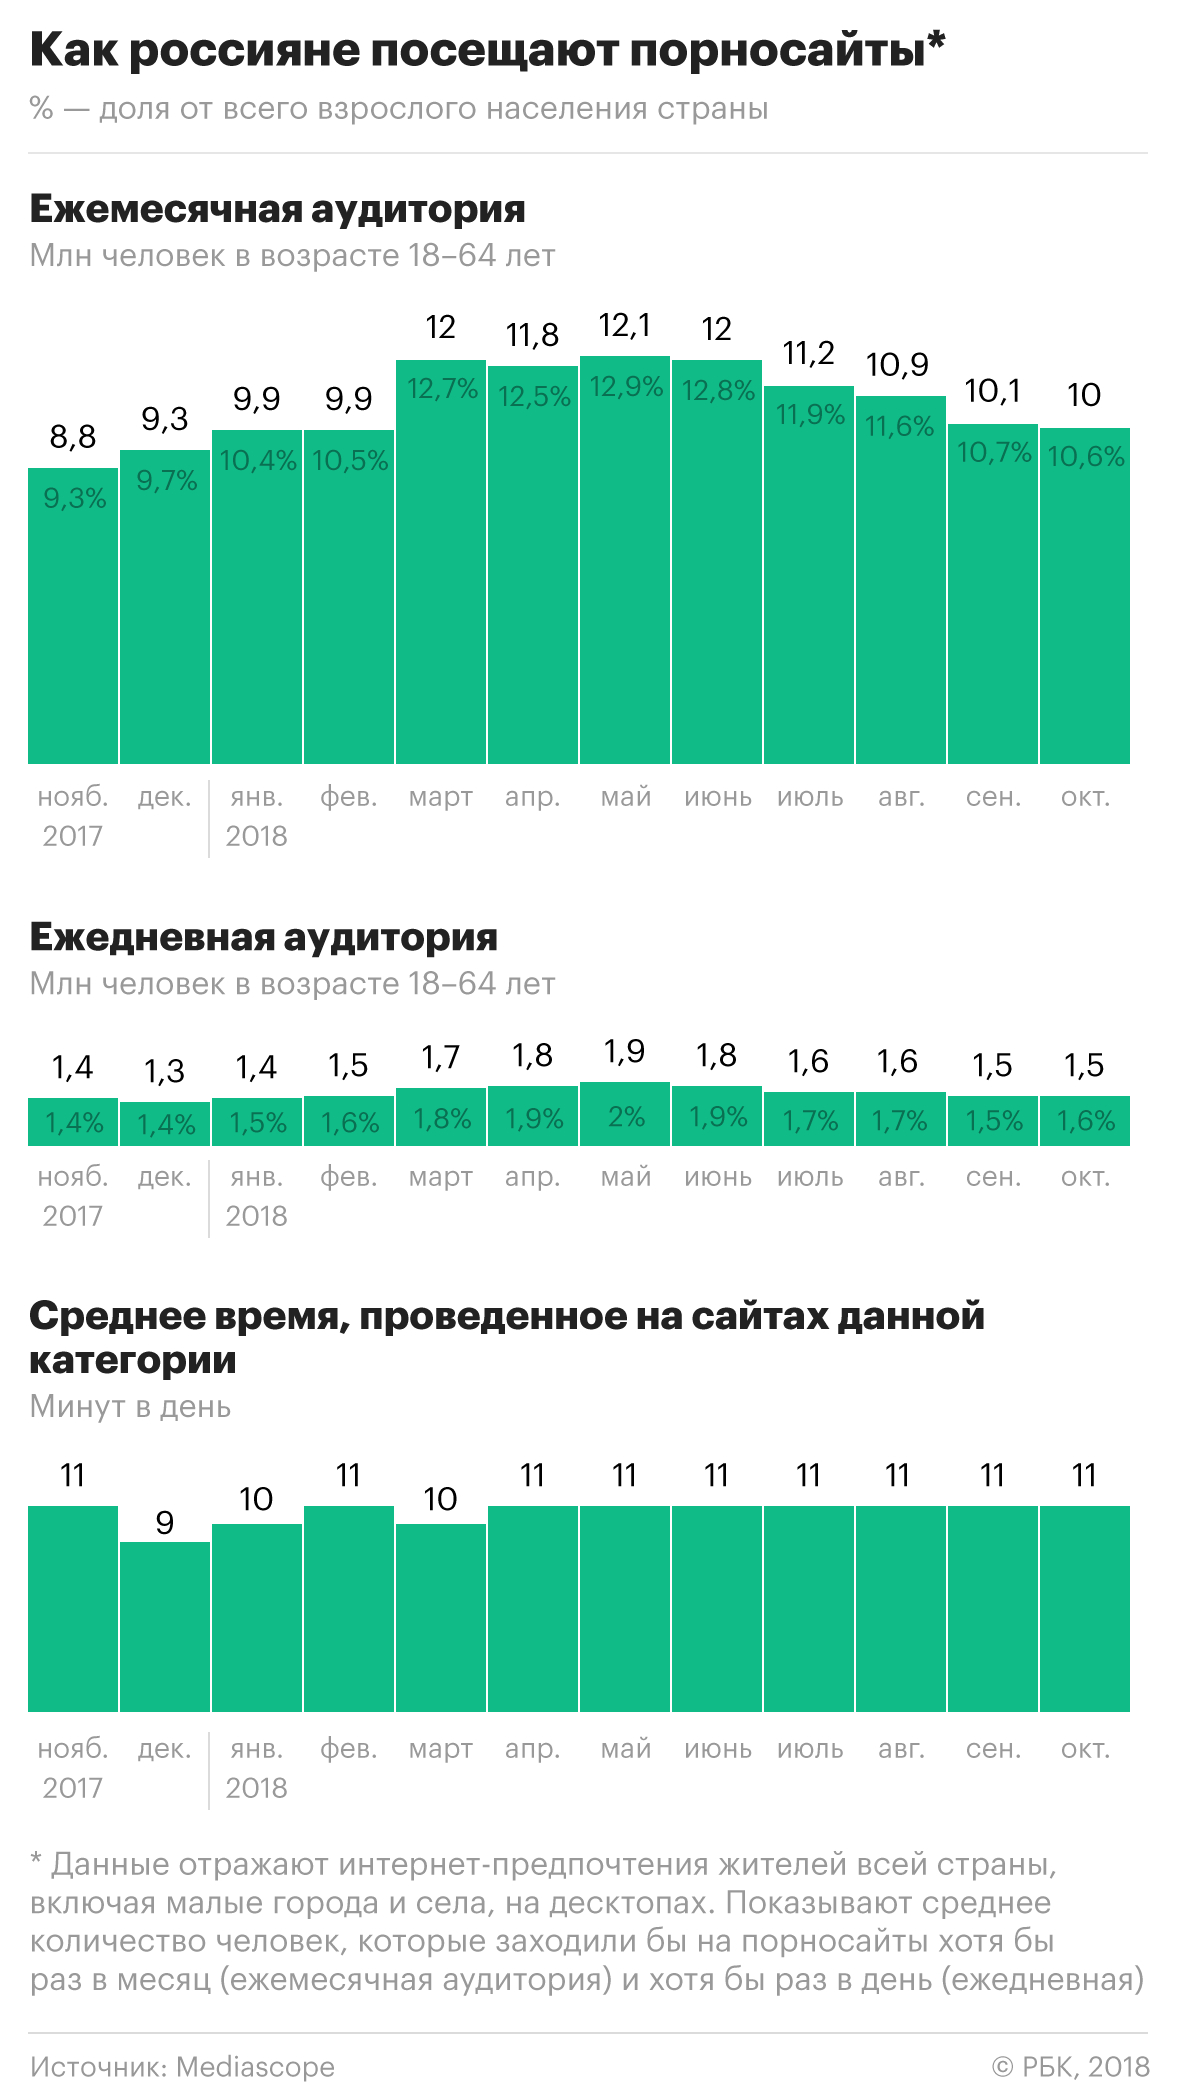 Mediascope раскрыла данные о российской аудитории сайтов для взрослых